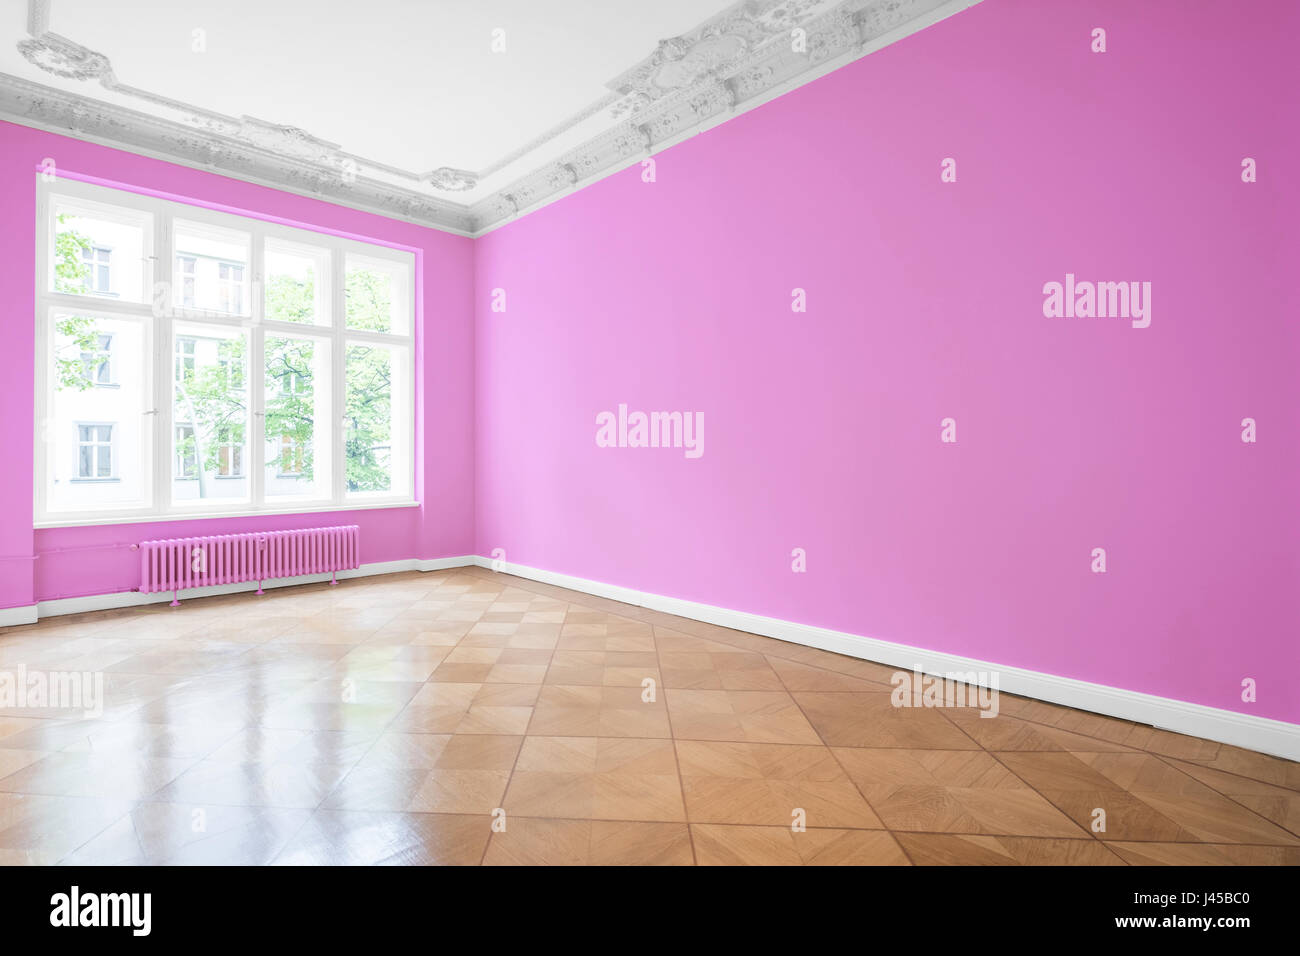 Salle vide dans nouvel appartement après rénovation - murs peints en rose et parquet Banque D'Images